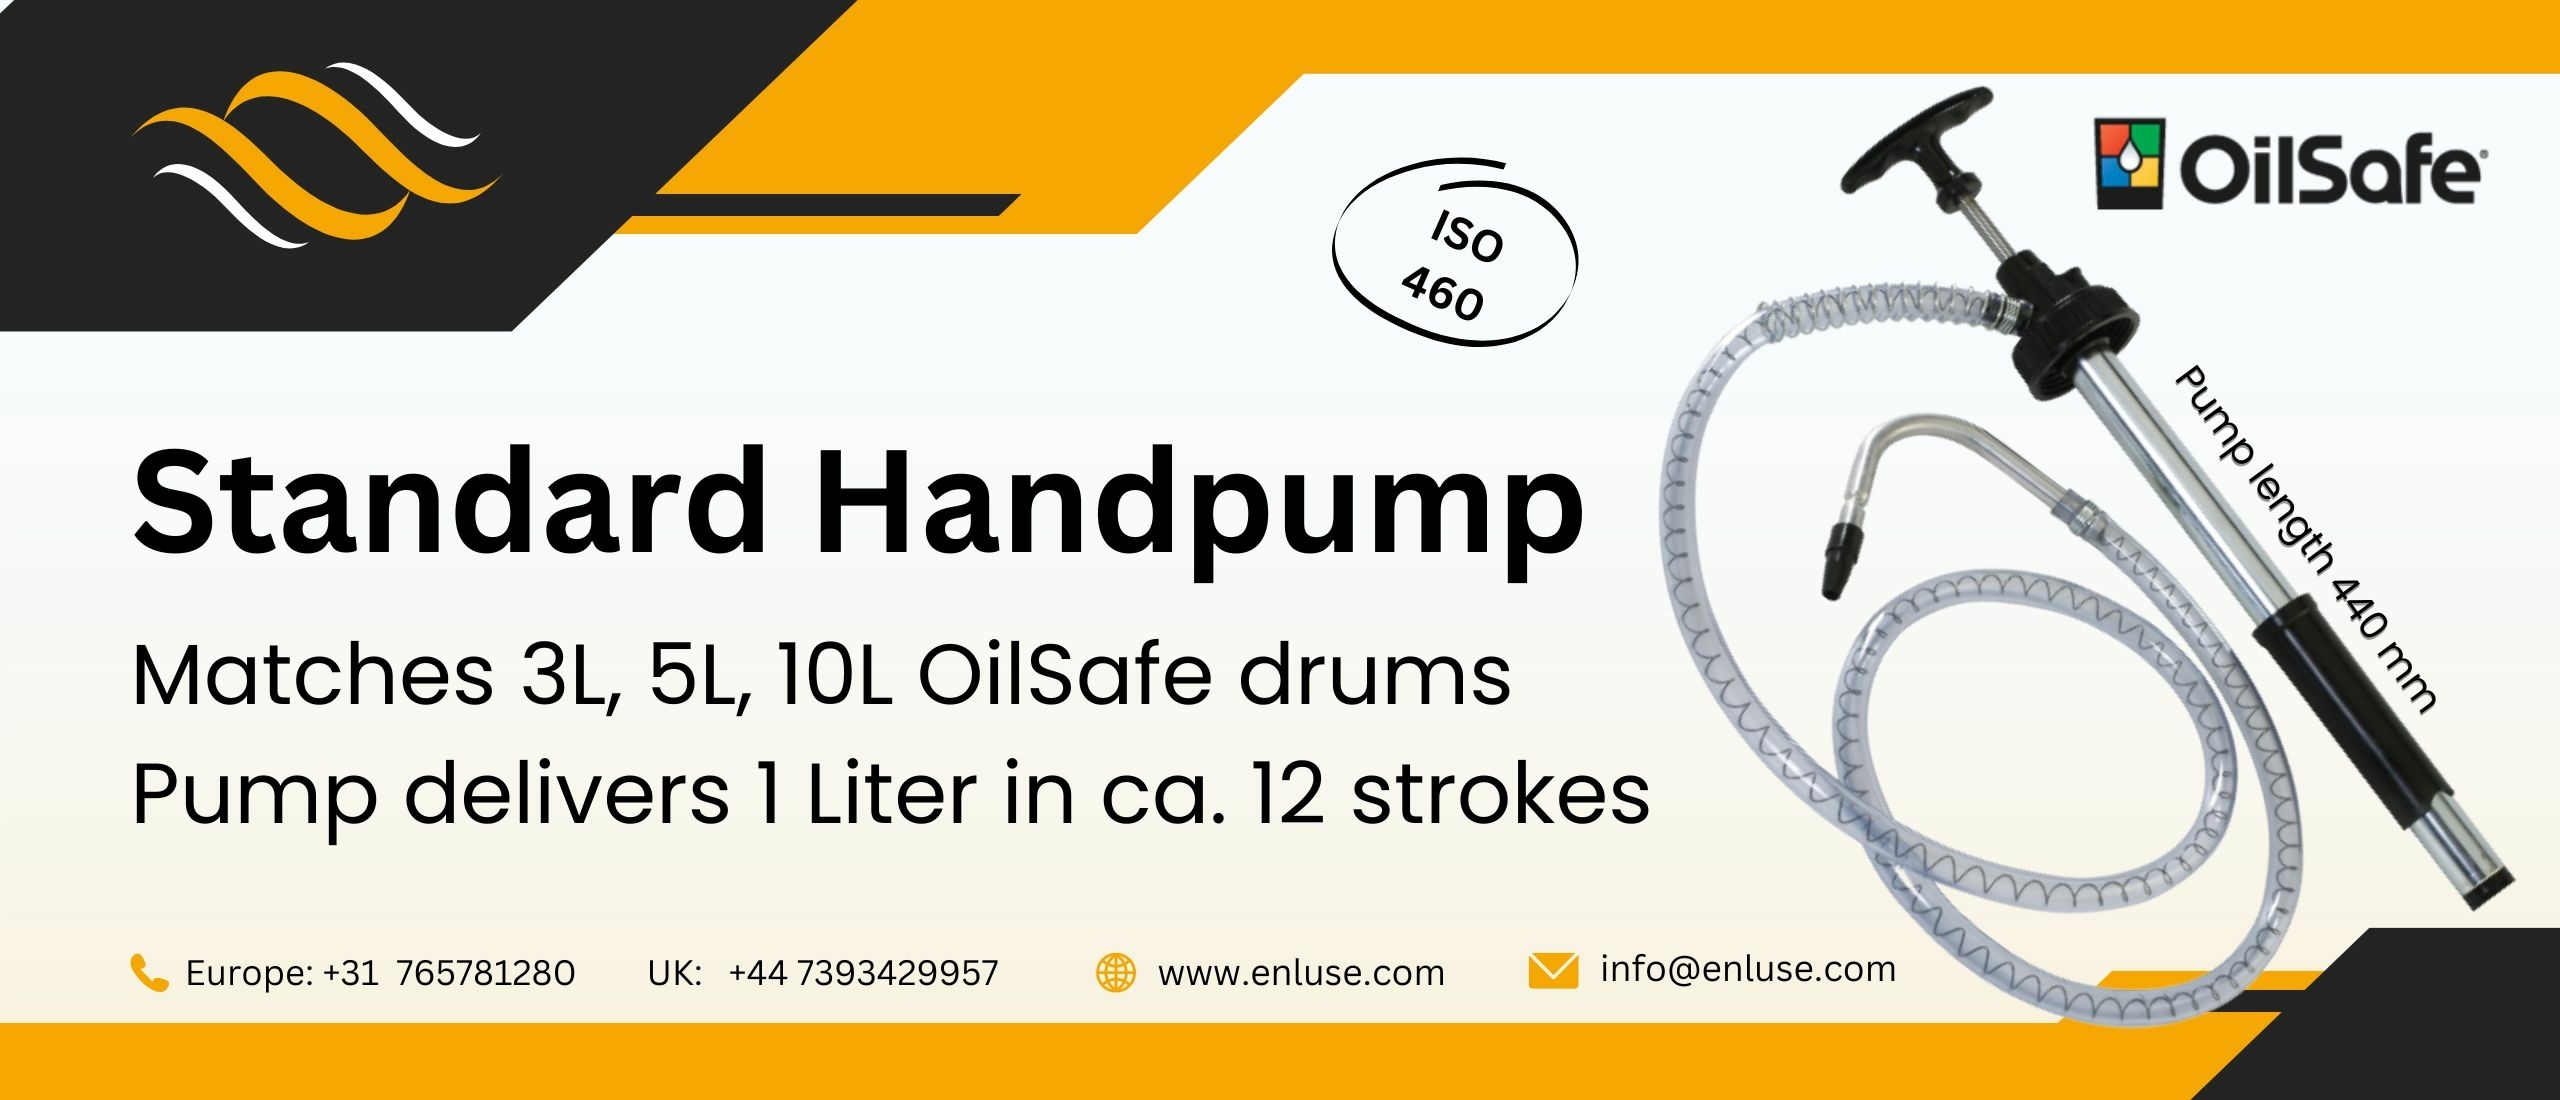 Handpump, standard for 3, 5 and 10 liter drums